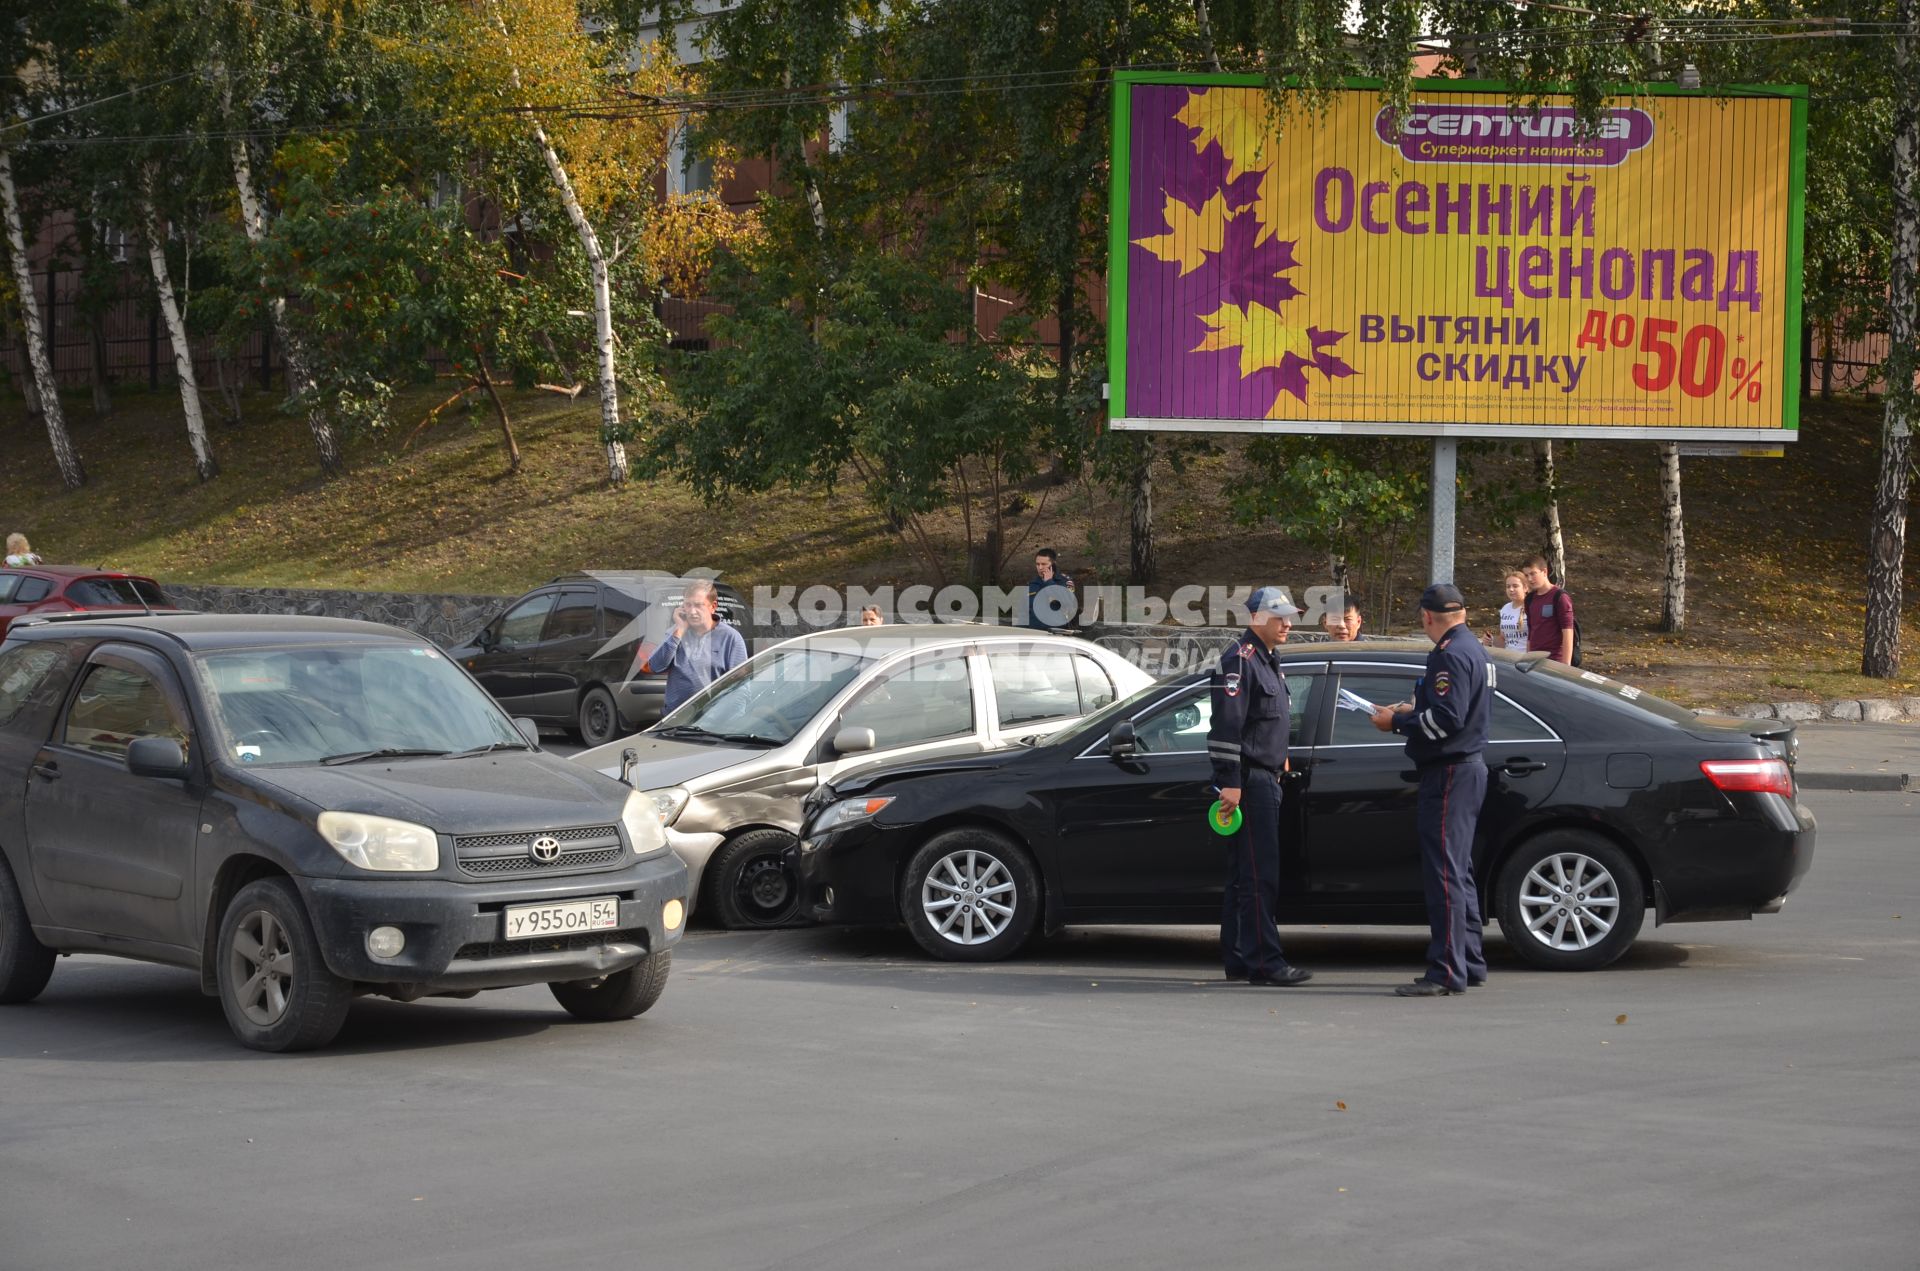 Новосибирск. ДТП на фоне плаката `Осенний ценопад`.